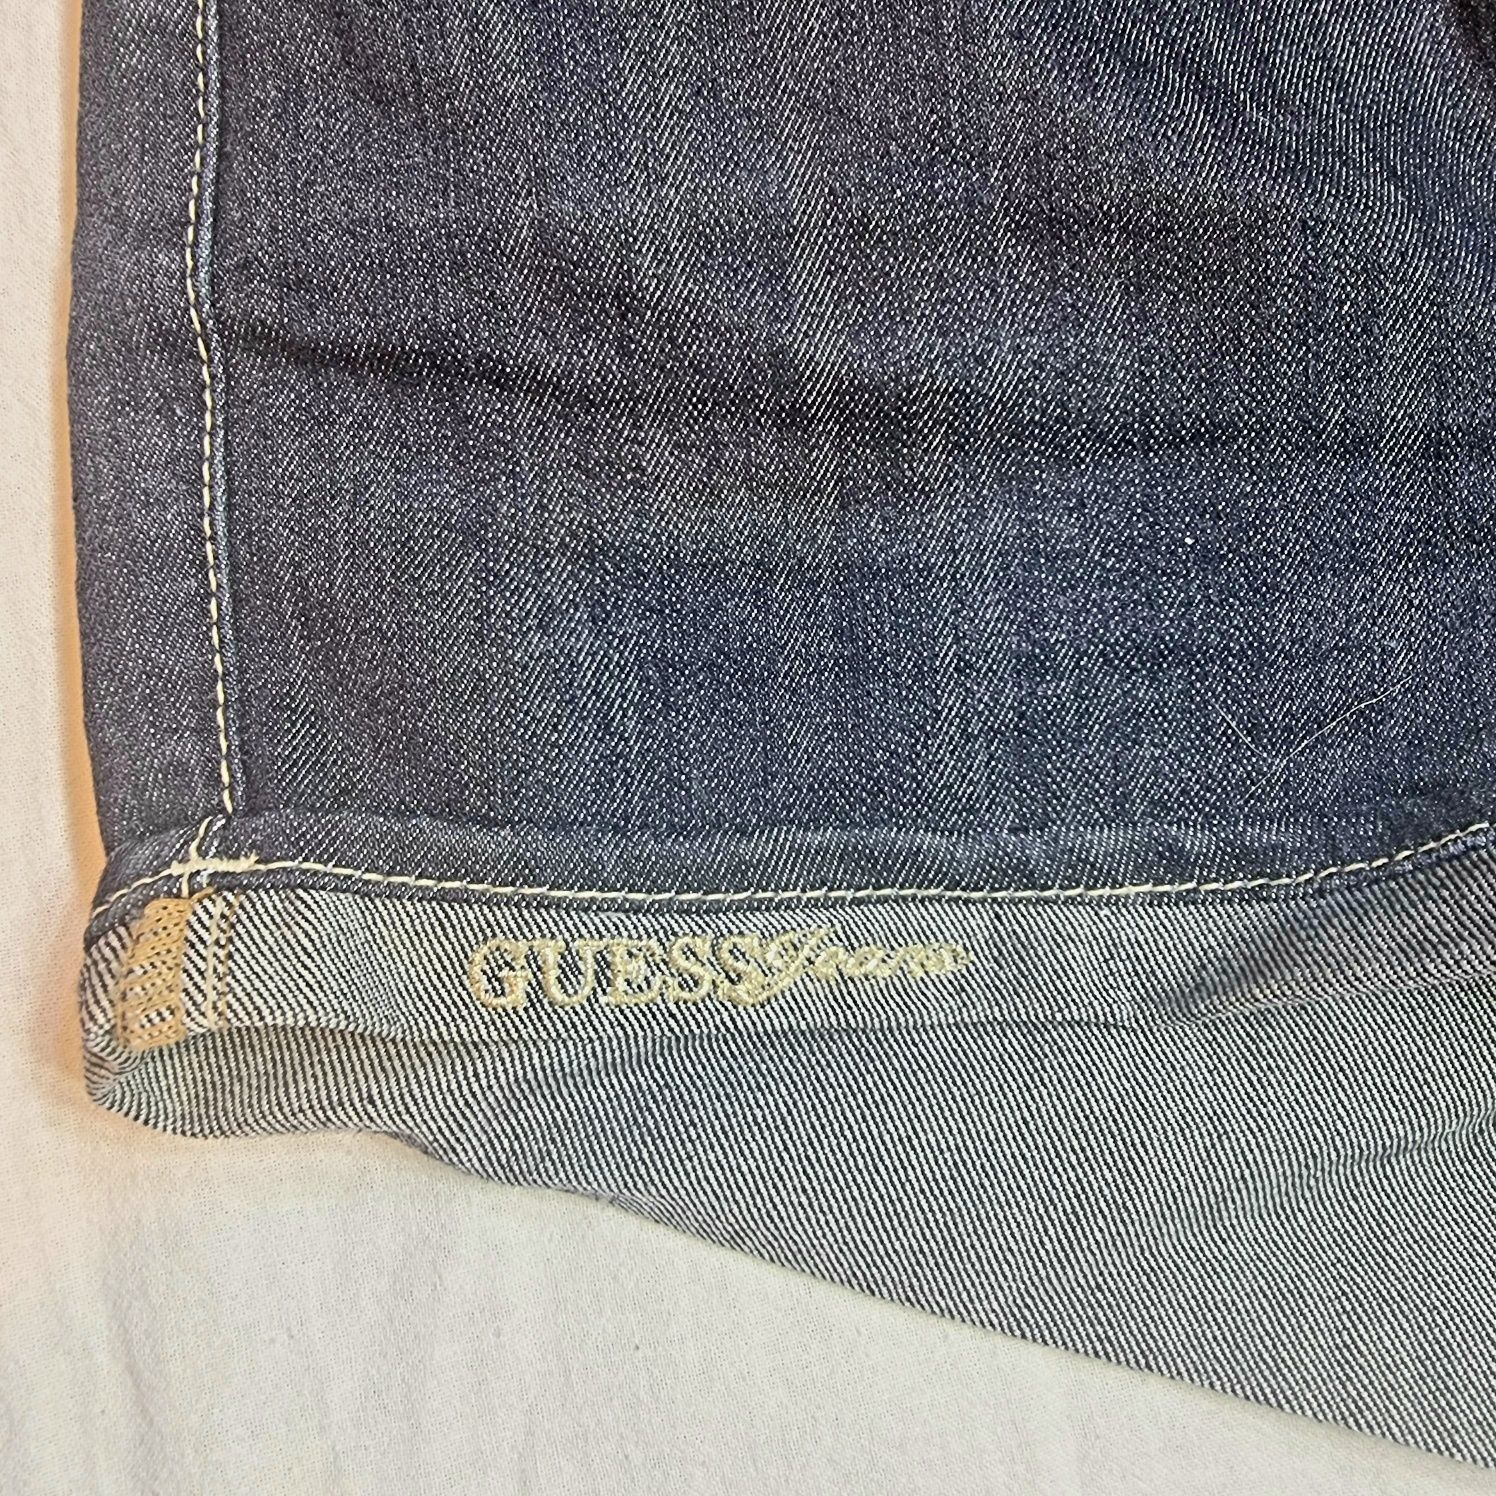 Spodenki Guess Jeans szorty roz. 29/38/M